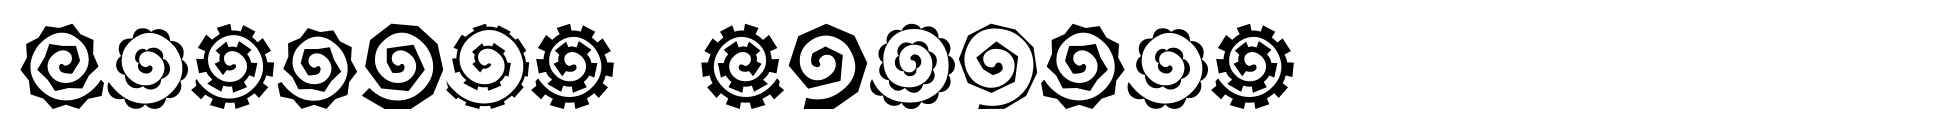 Altemus Spirals